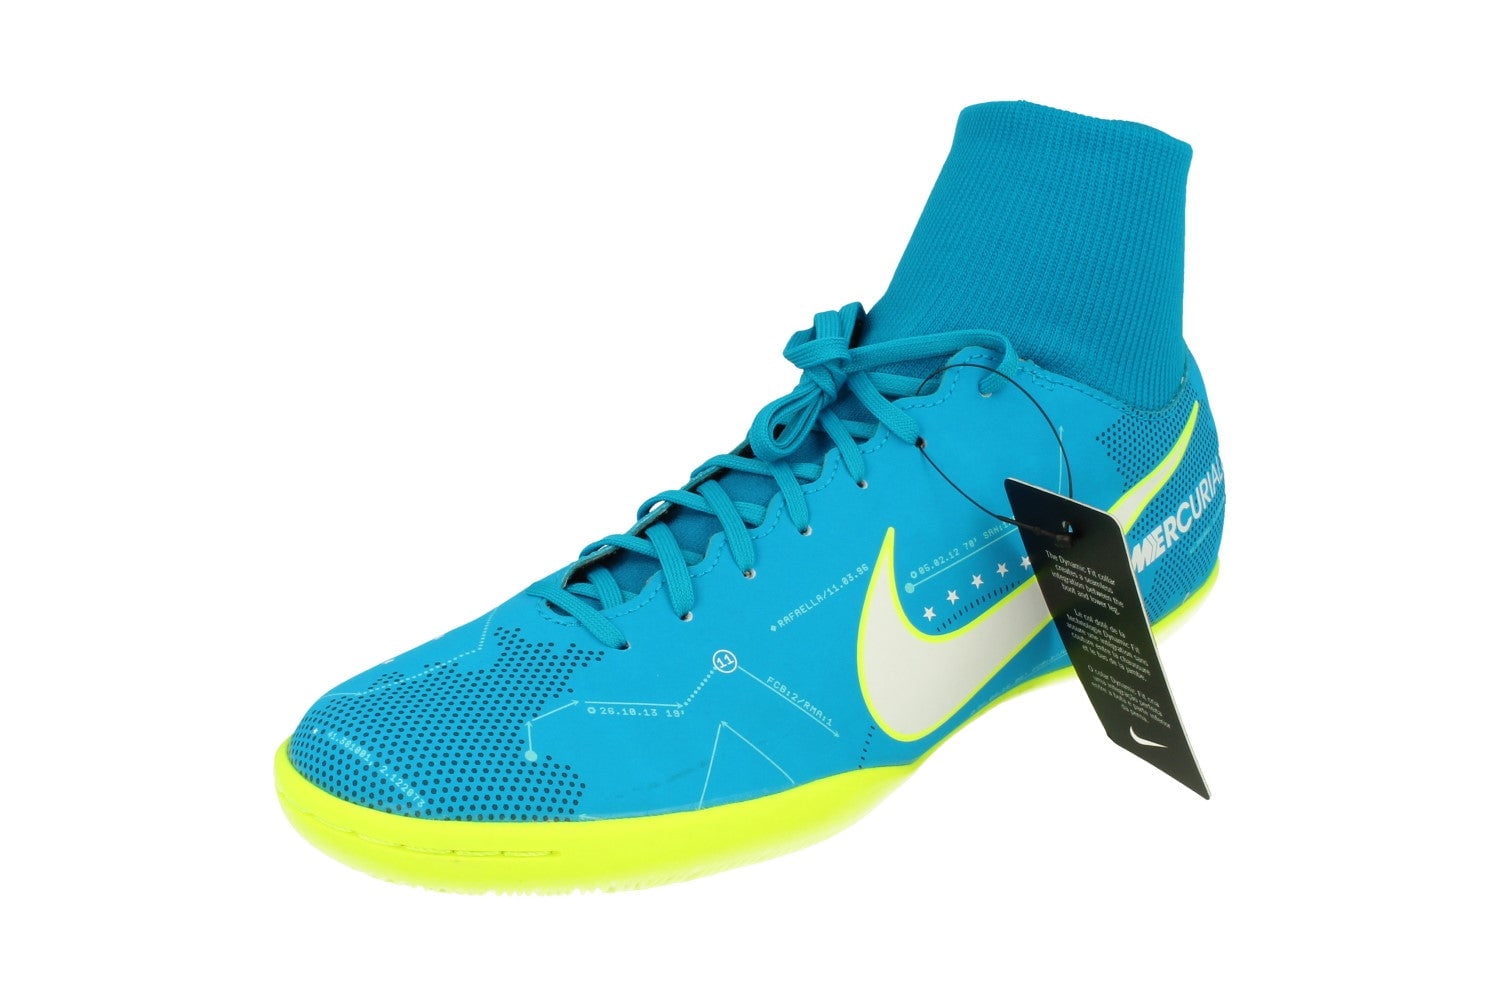 Nike Mercurialx Victory VI Df Njr Mens Football Boots 921515 400 - Walmart.com